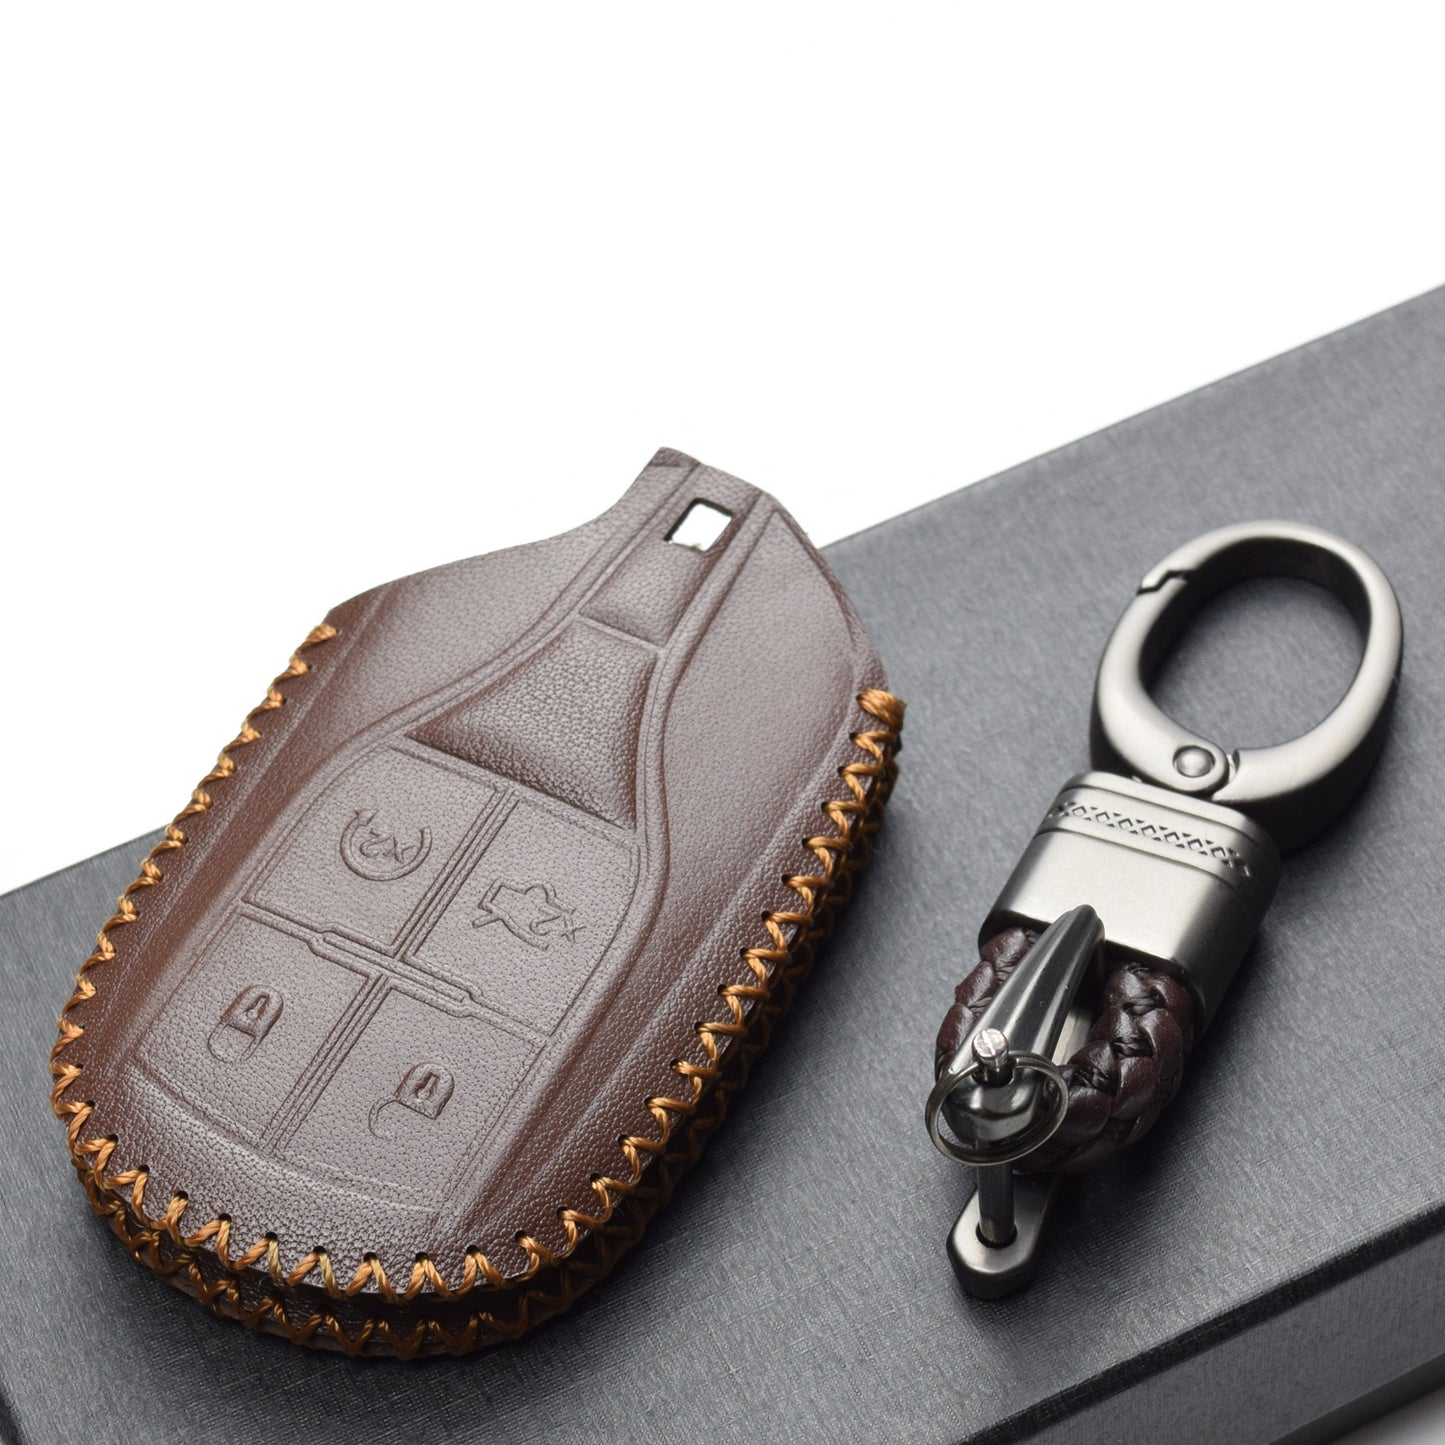 Vitodeco 4-Button Genuine Leather Smart Key Fob Case Cover Compatible for Maserati Ghibli, Levante, Quattroporte (Remote Start)